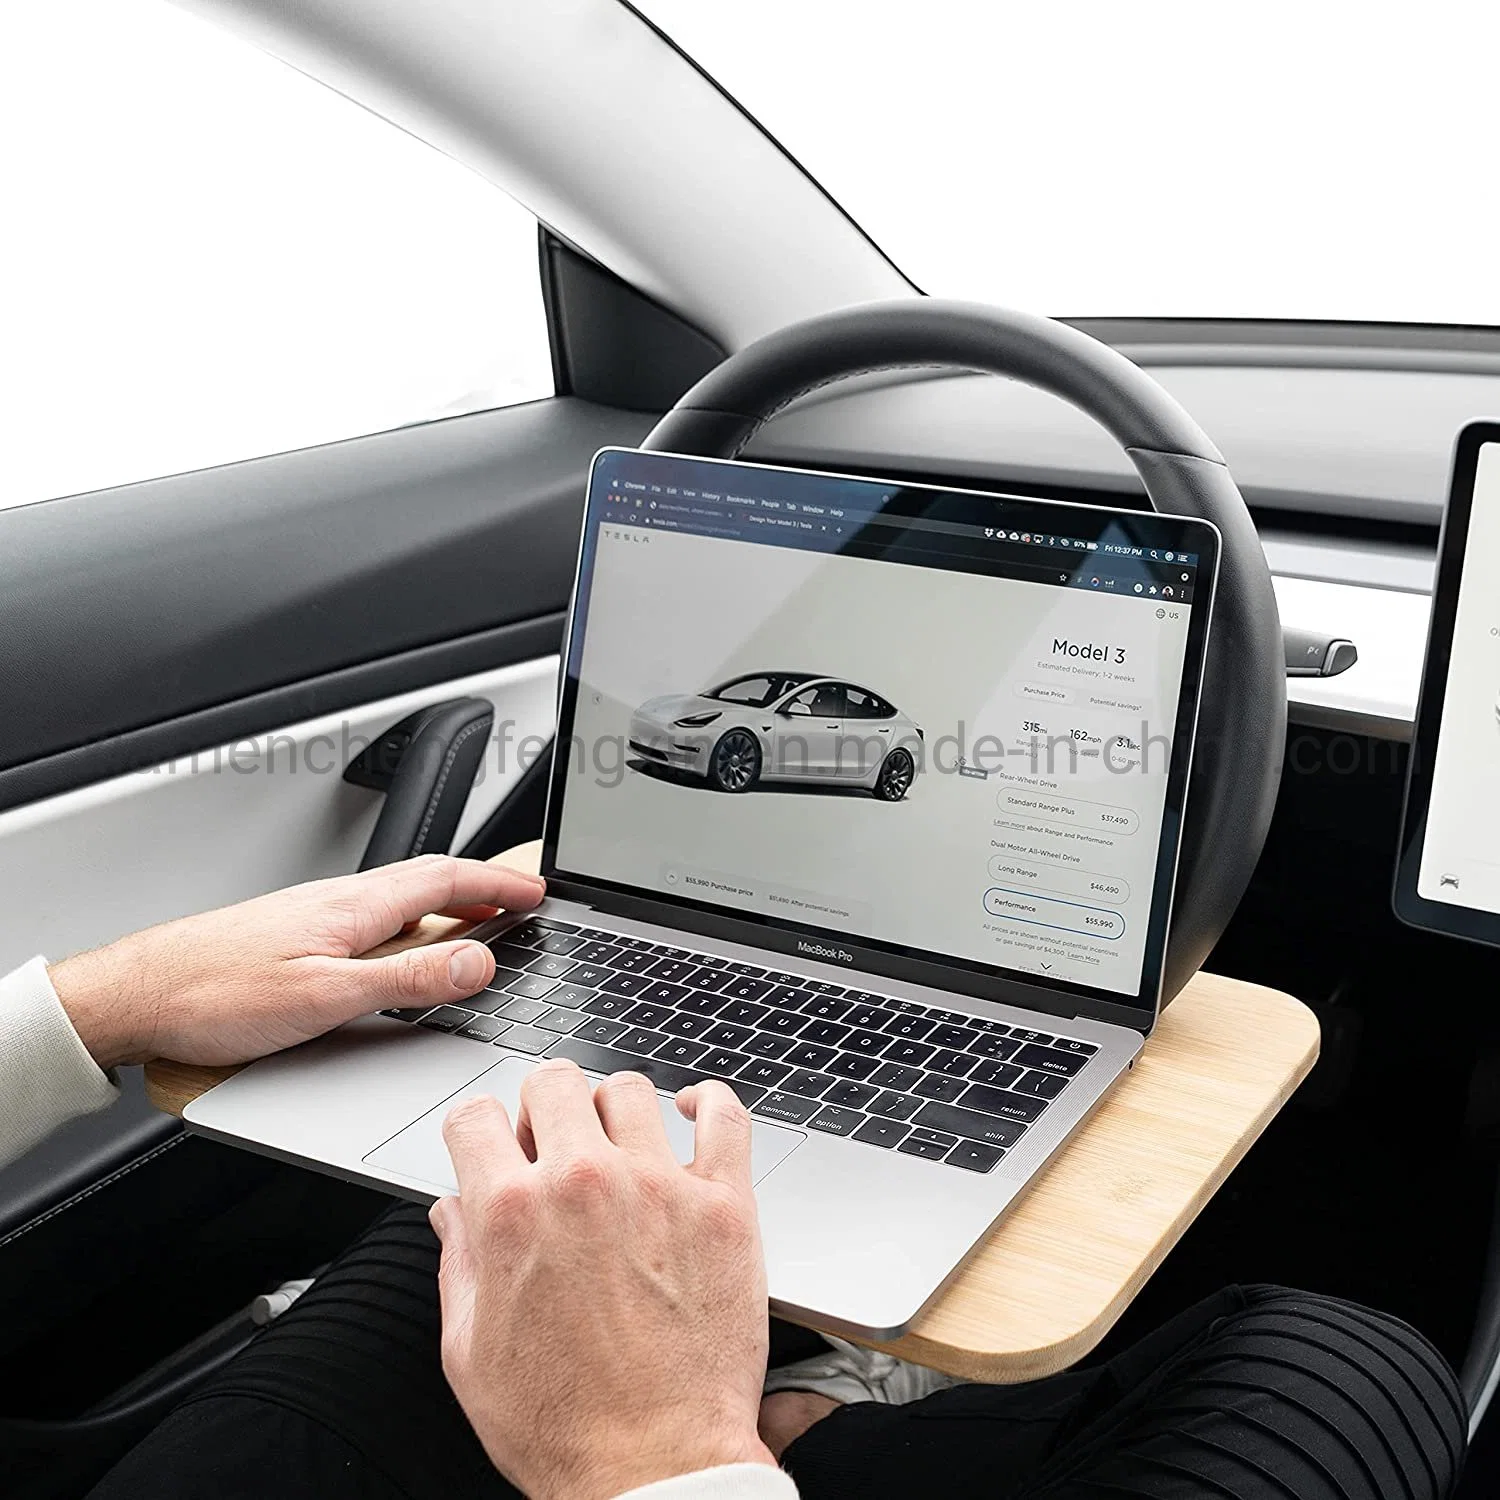 Plateau de volant - Mangez confortablement dans votre voiture - Bureau d'ordinateur portable pour travailler à distance - Convient à la plupart des voitures, y compris le modèle Tesla.